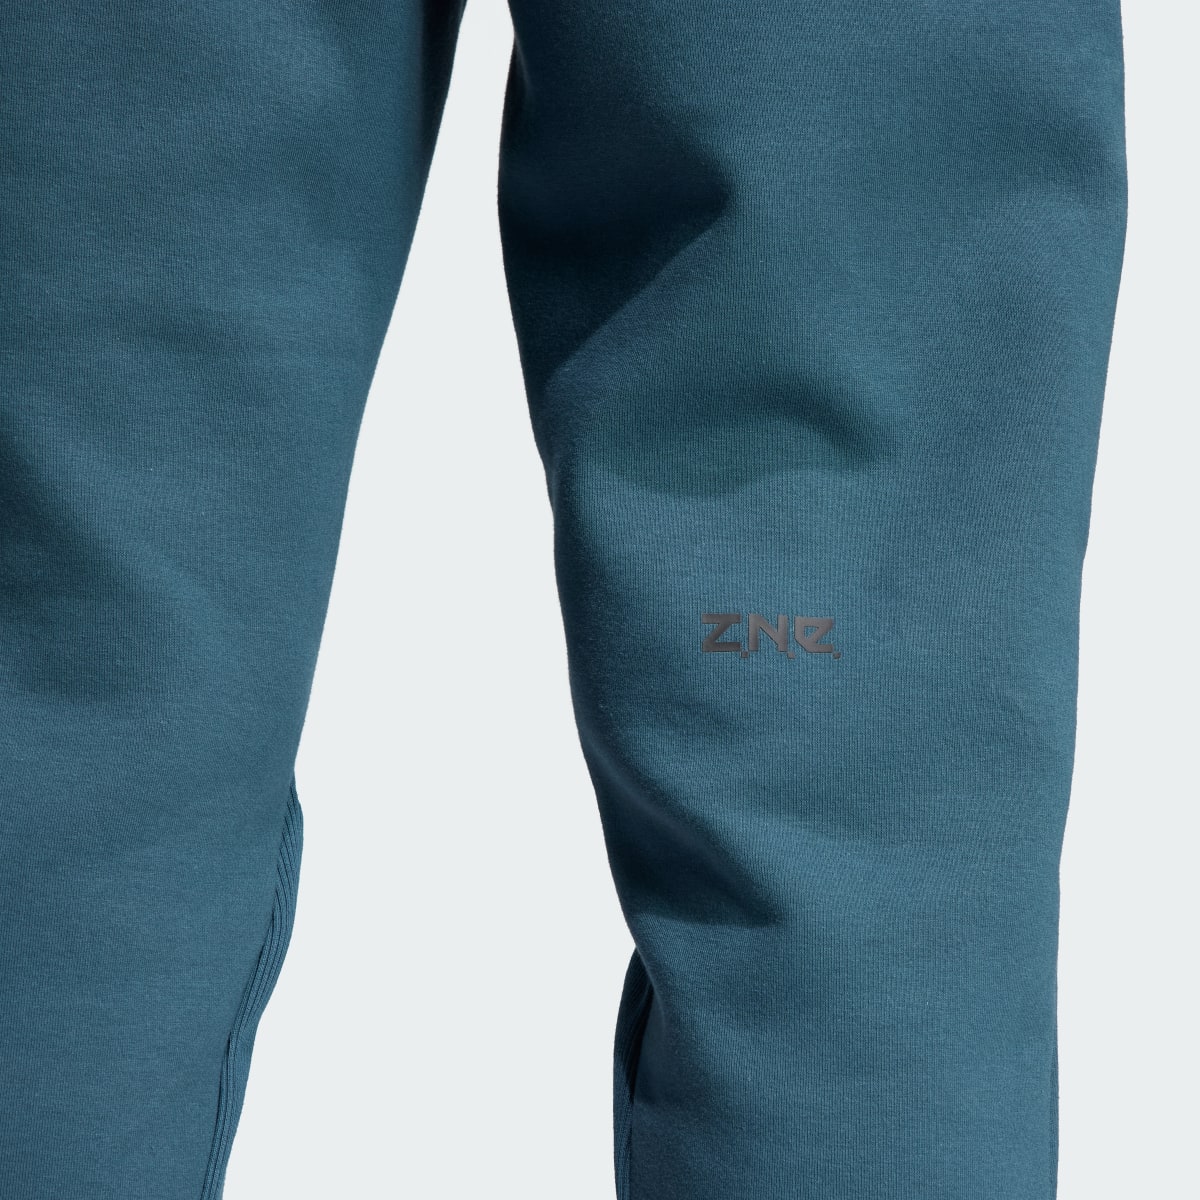 Adidas Z.N.E. Premium Pants. 8